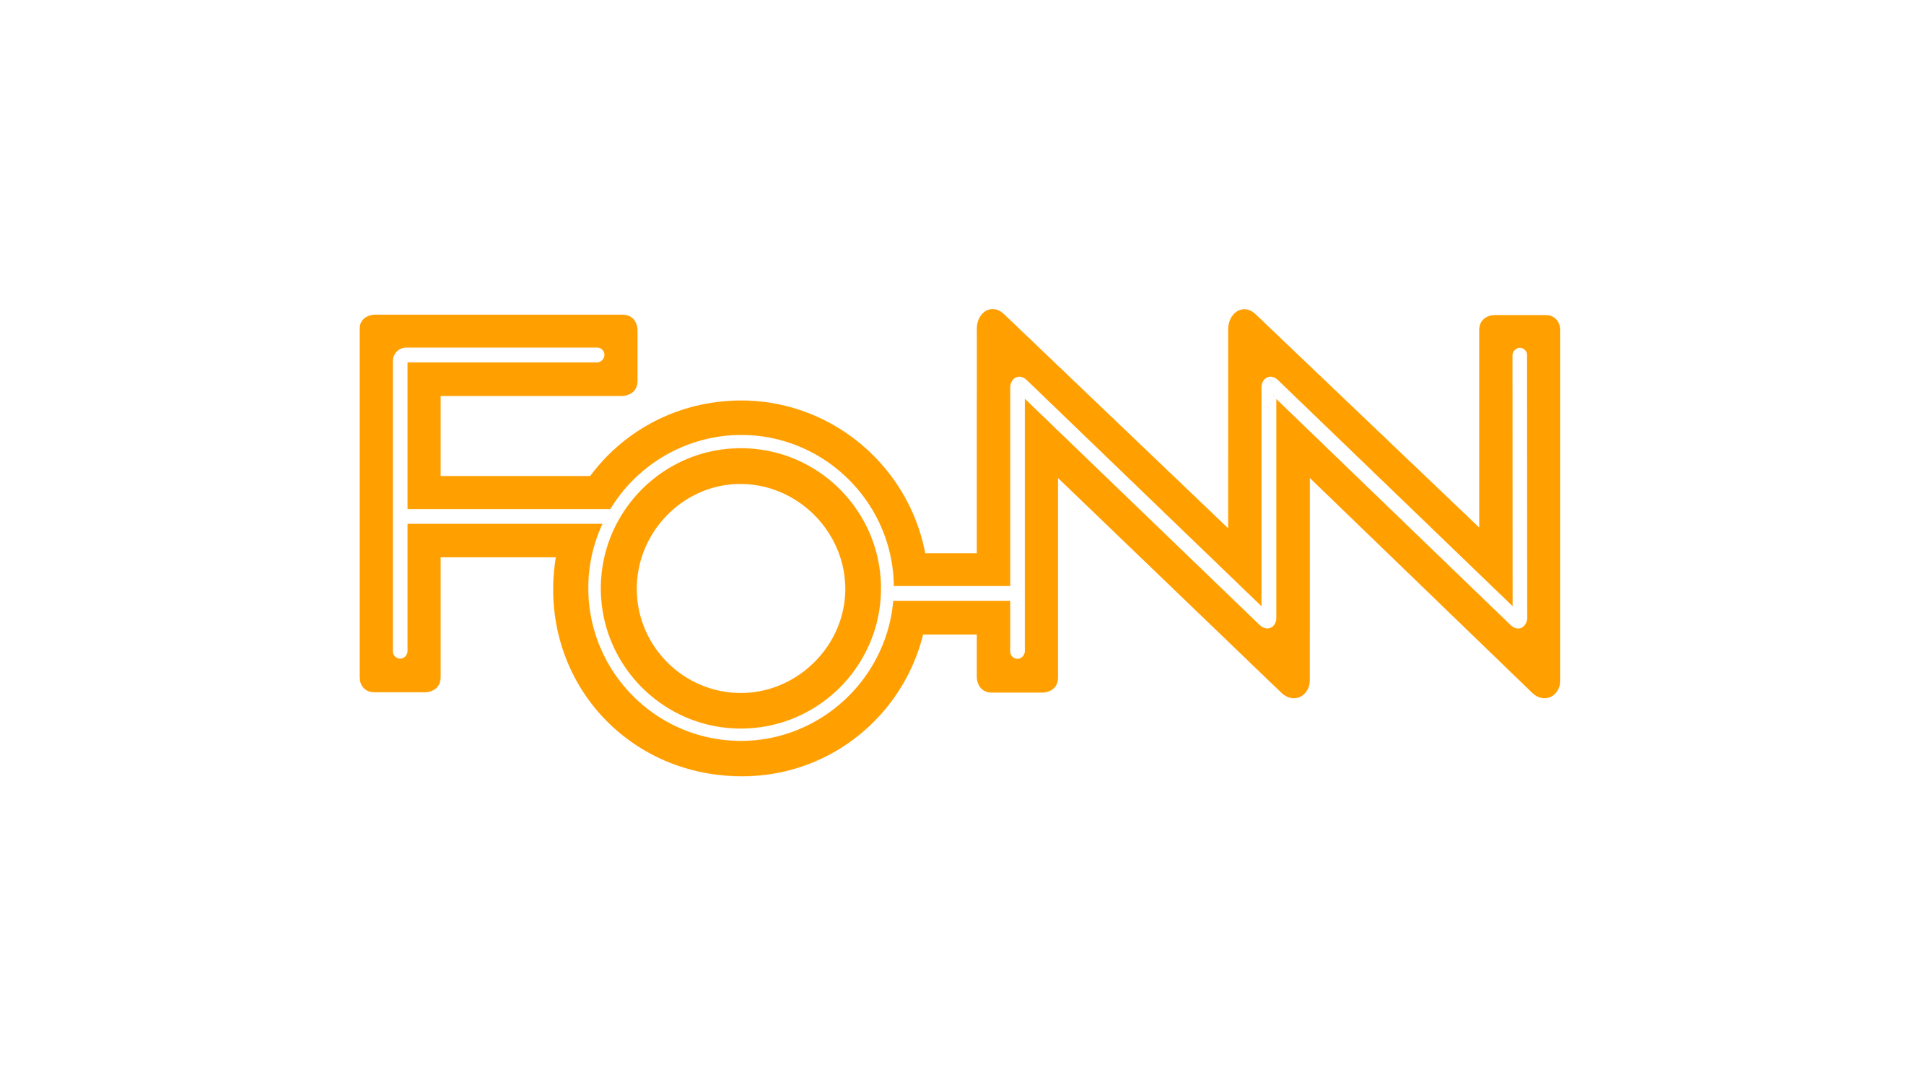 FONN